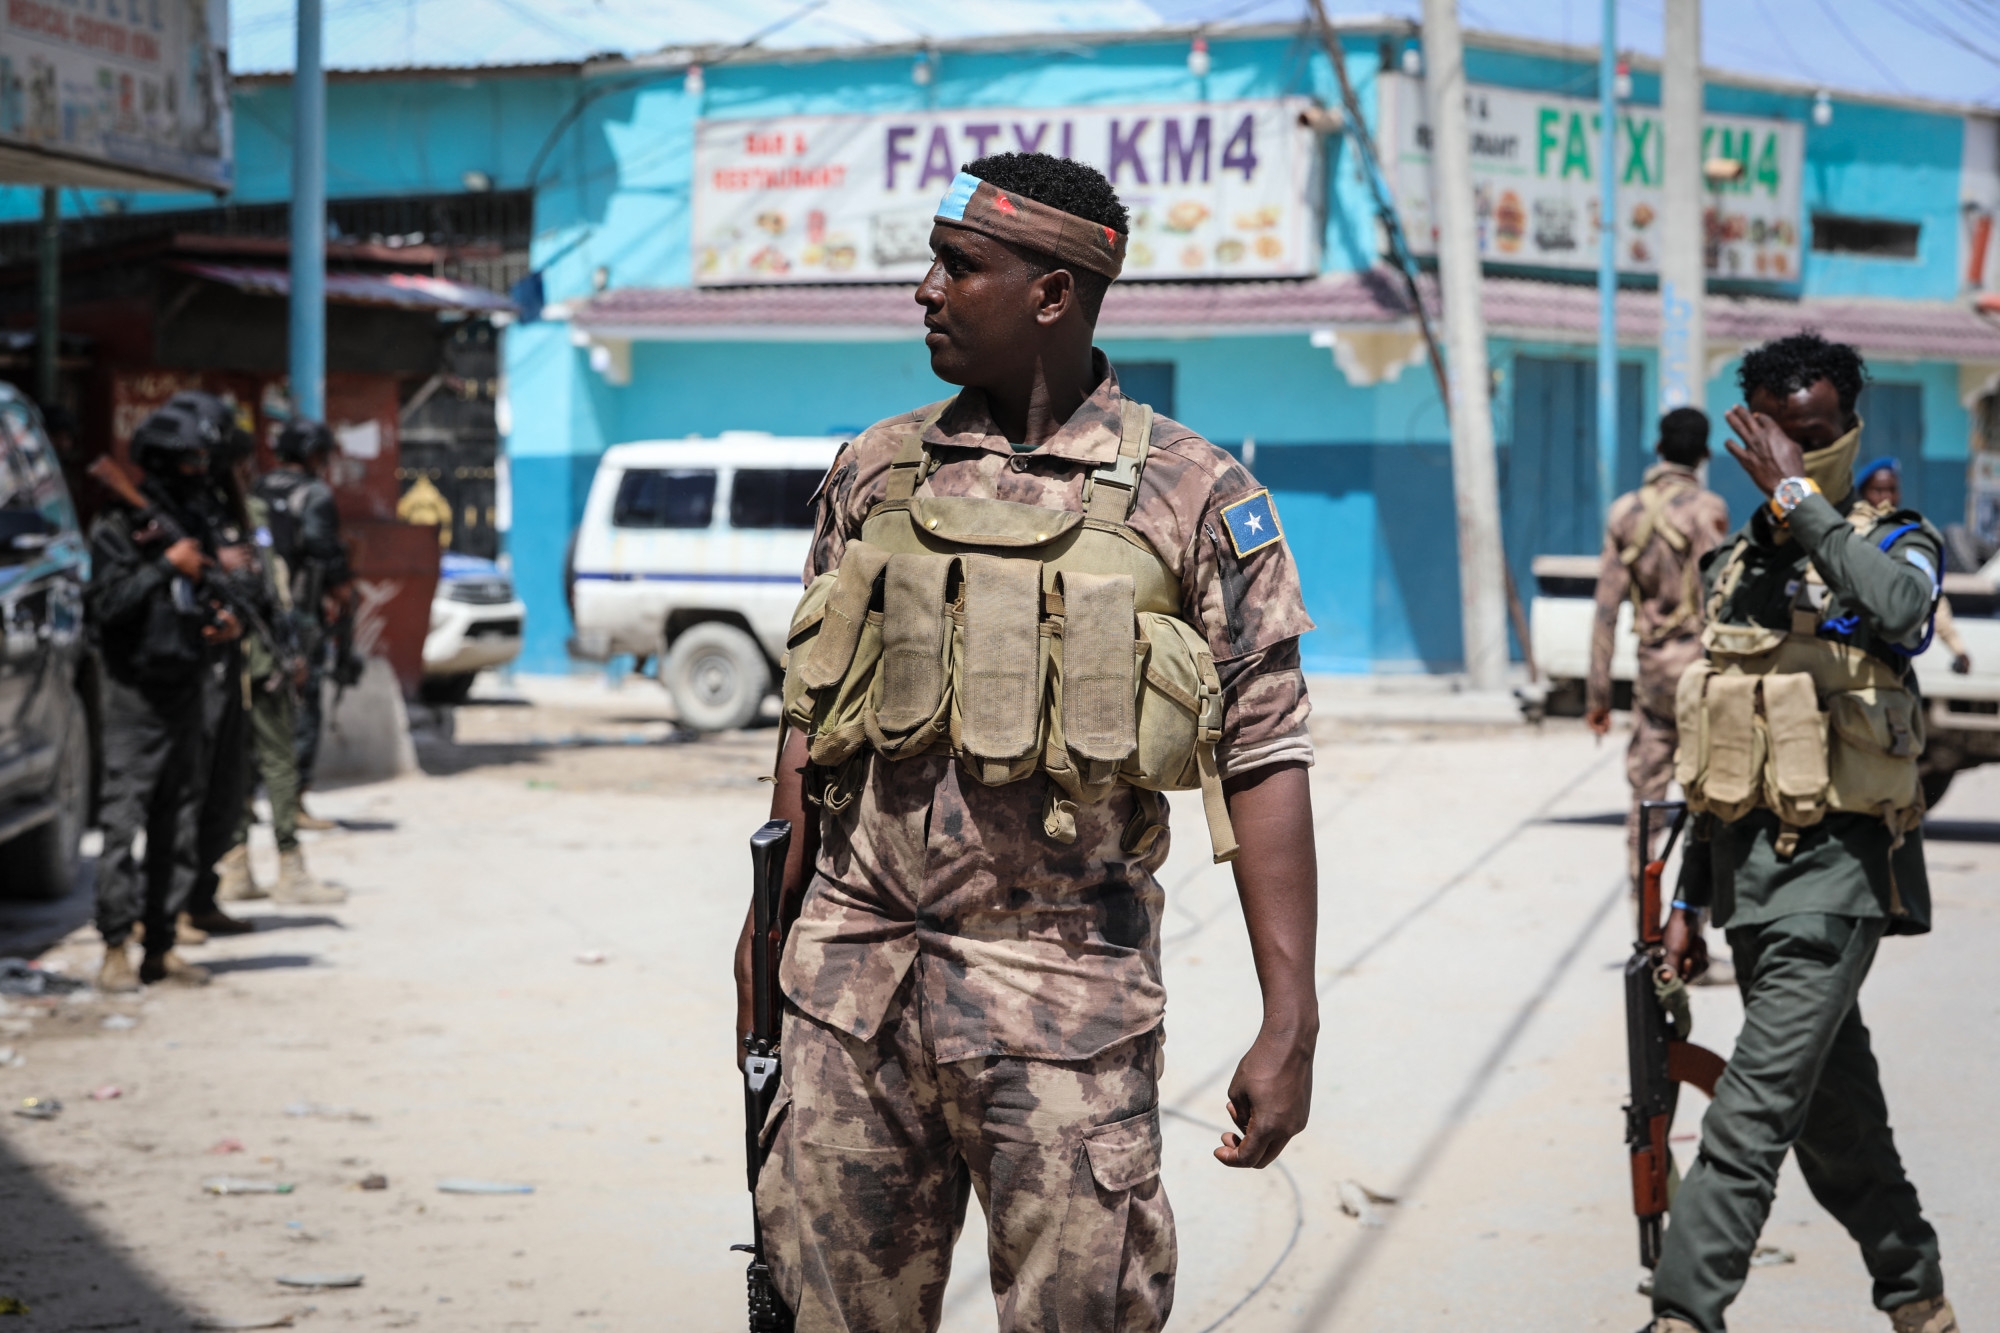 12 órája tart egy terrorakció egy szomáliai szállodában